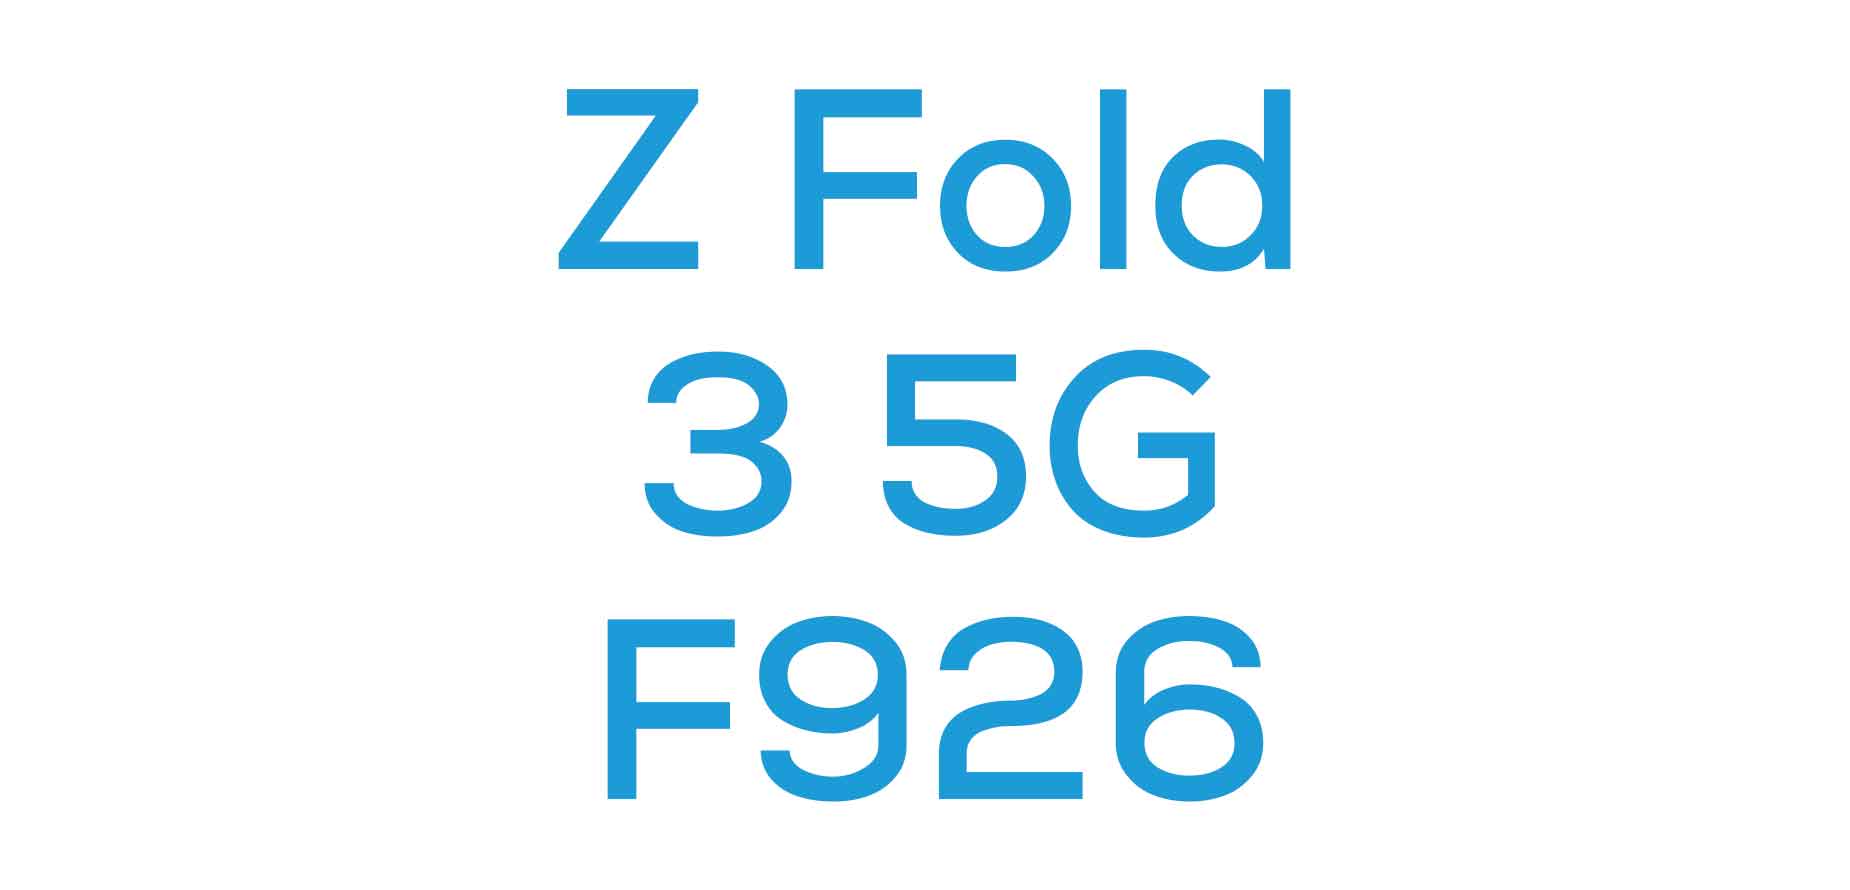 Z Fold 3 5G F926